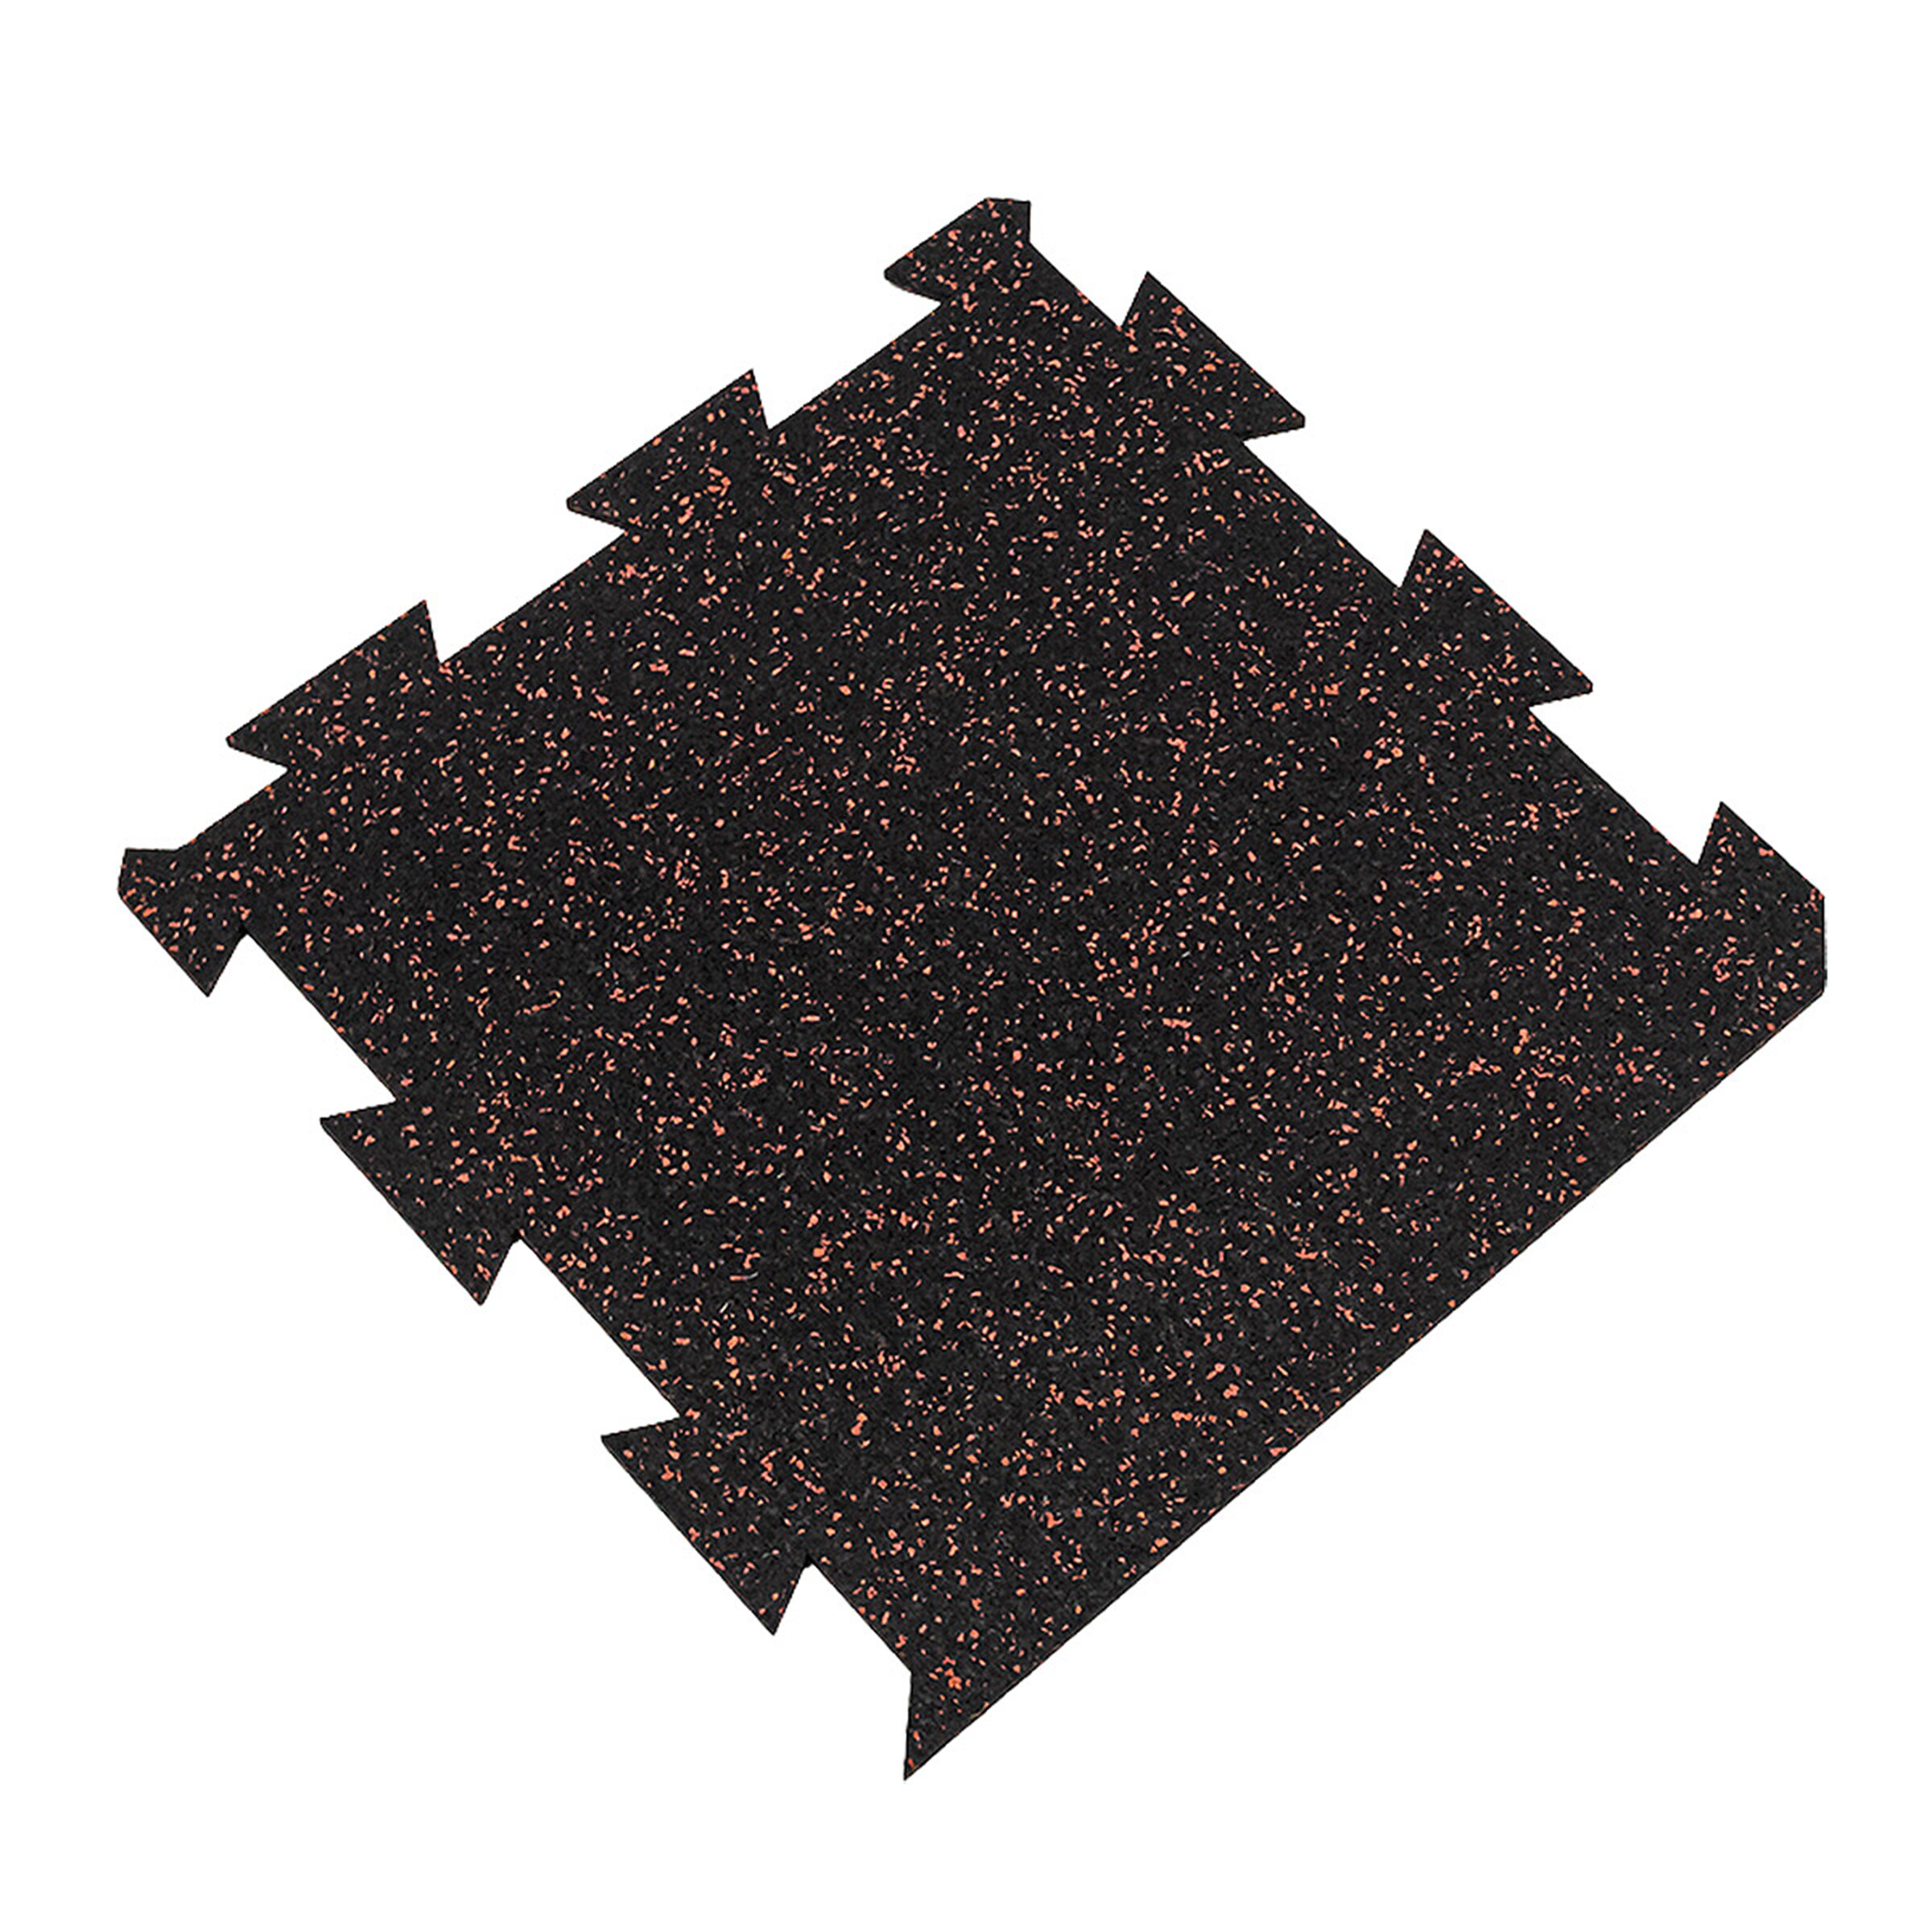 Černo-červená gumová modulová puzzle dlažba (okraj) FLOMA FitFlo SF1050 - délka 50 cm, šířka 50 cm, výška 1,6 cm